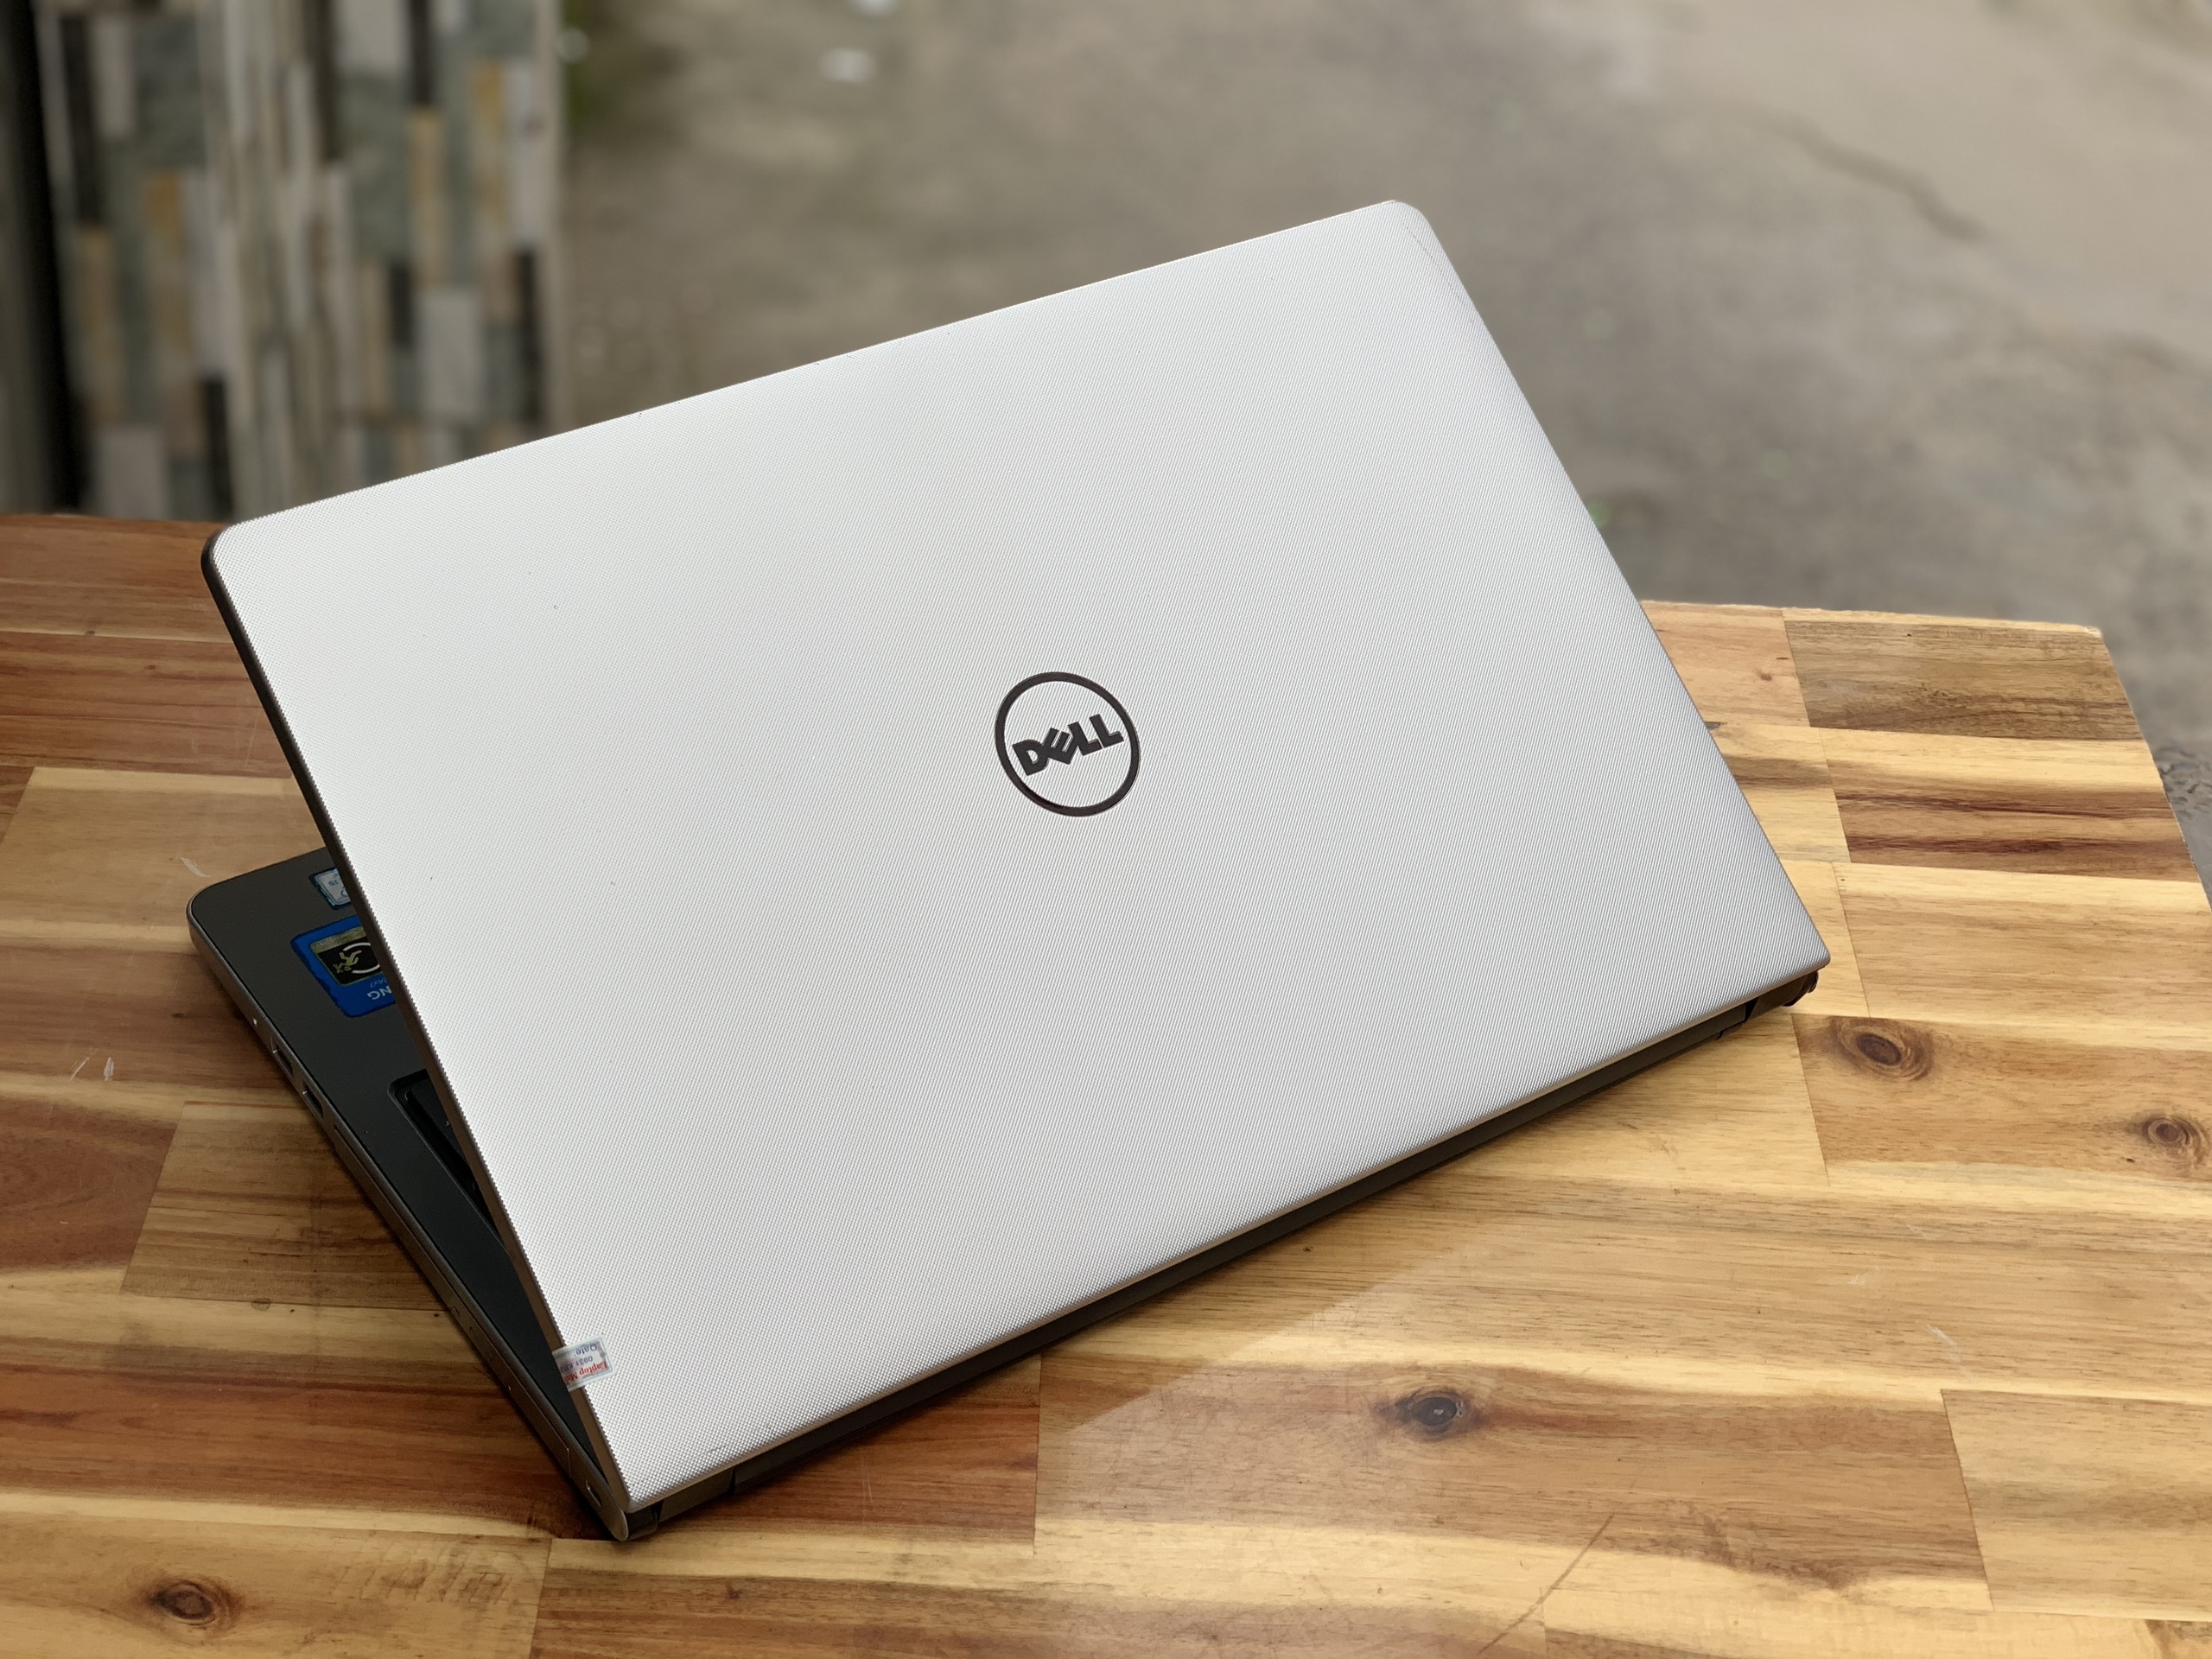 Laptop Dell Inspiron 5559, i7 6500U 8G SSD128+500G Vga rời 4G Đèn phím Đẹp zin 100% Giá rẻ1